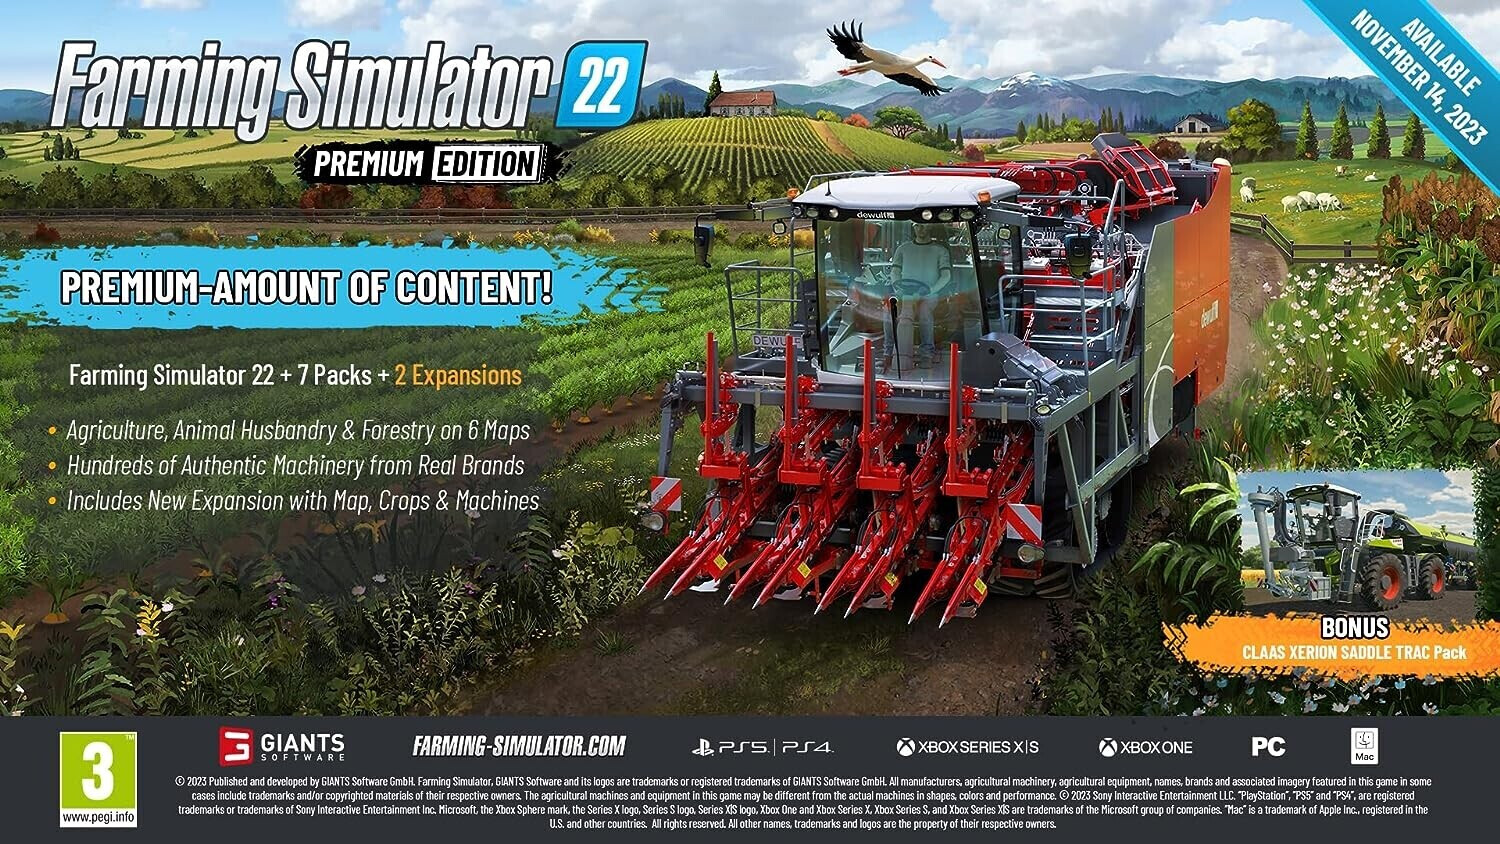 Landwirtschafts-Simulator 22: Premium Edition (PS5) ab 35,90